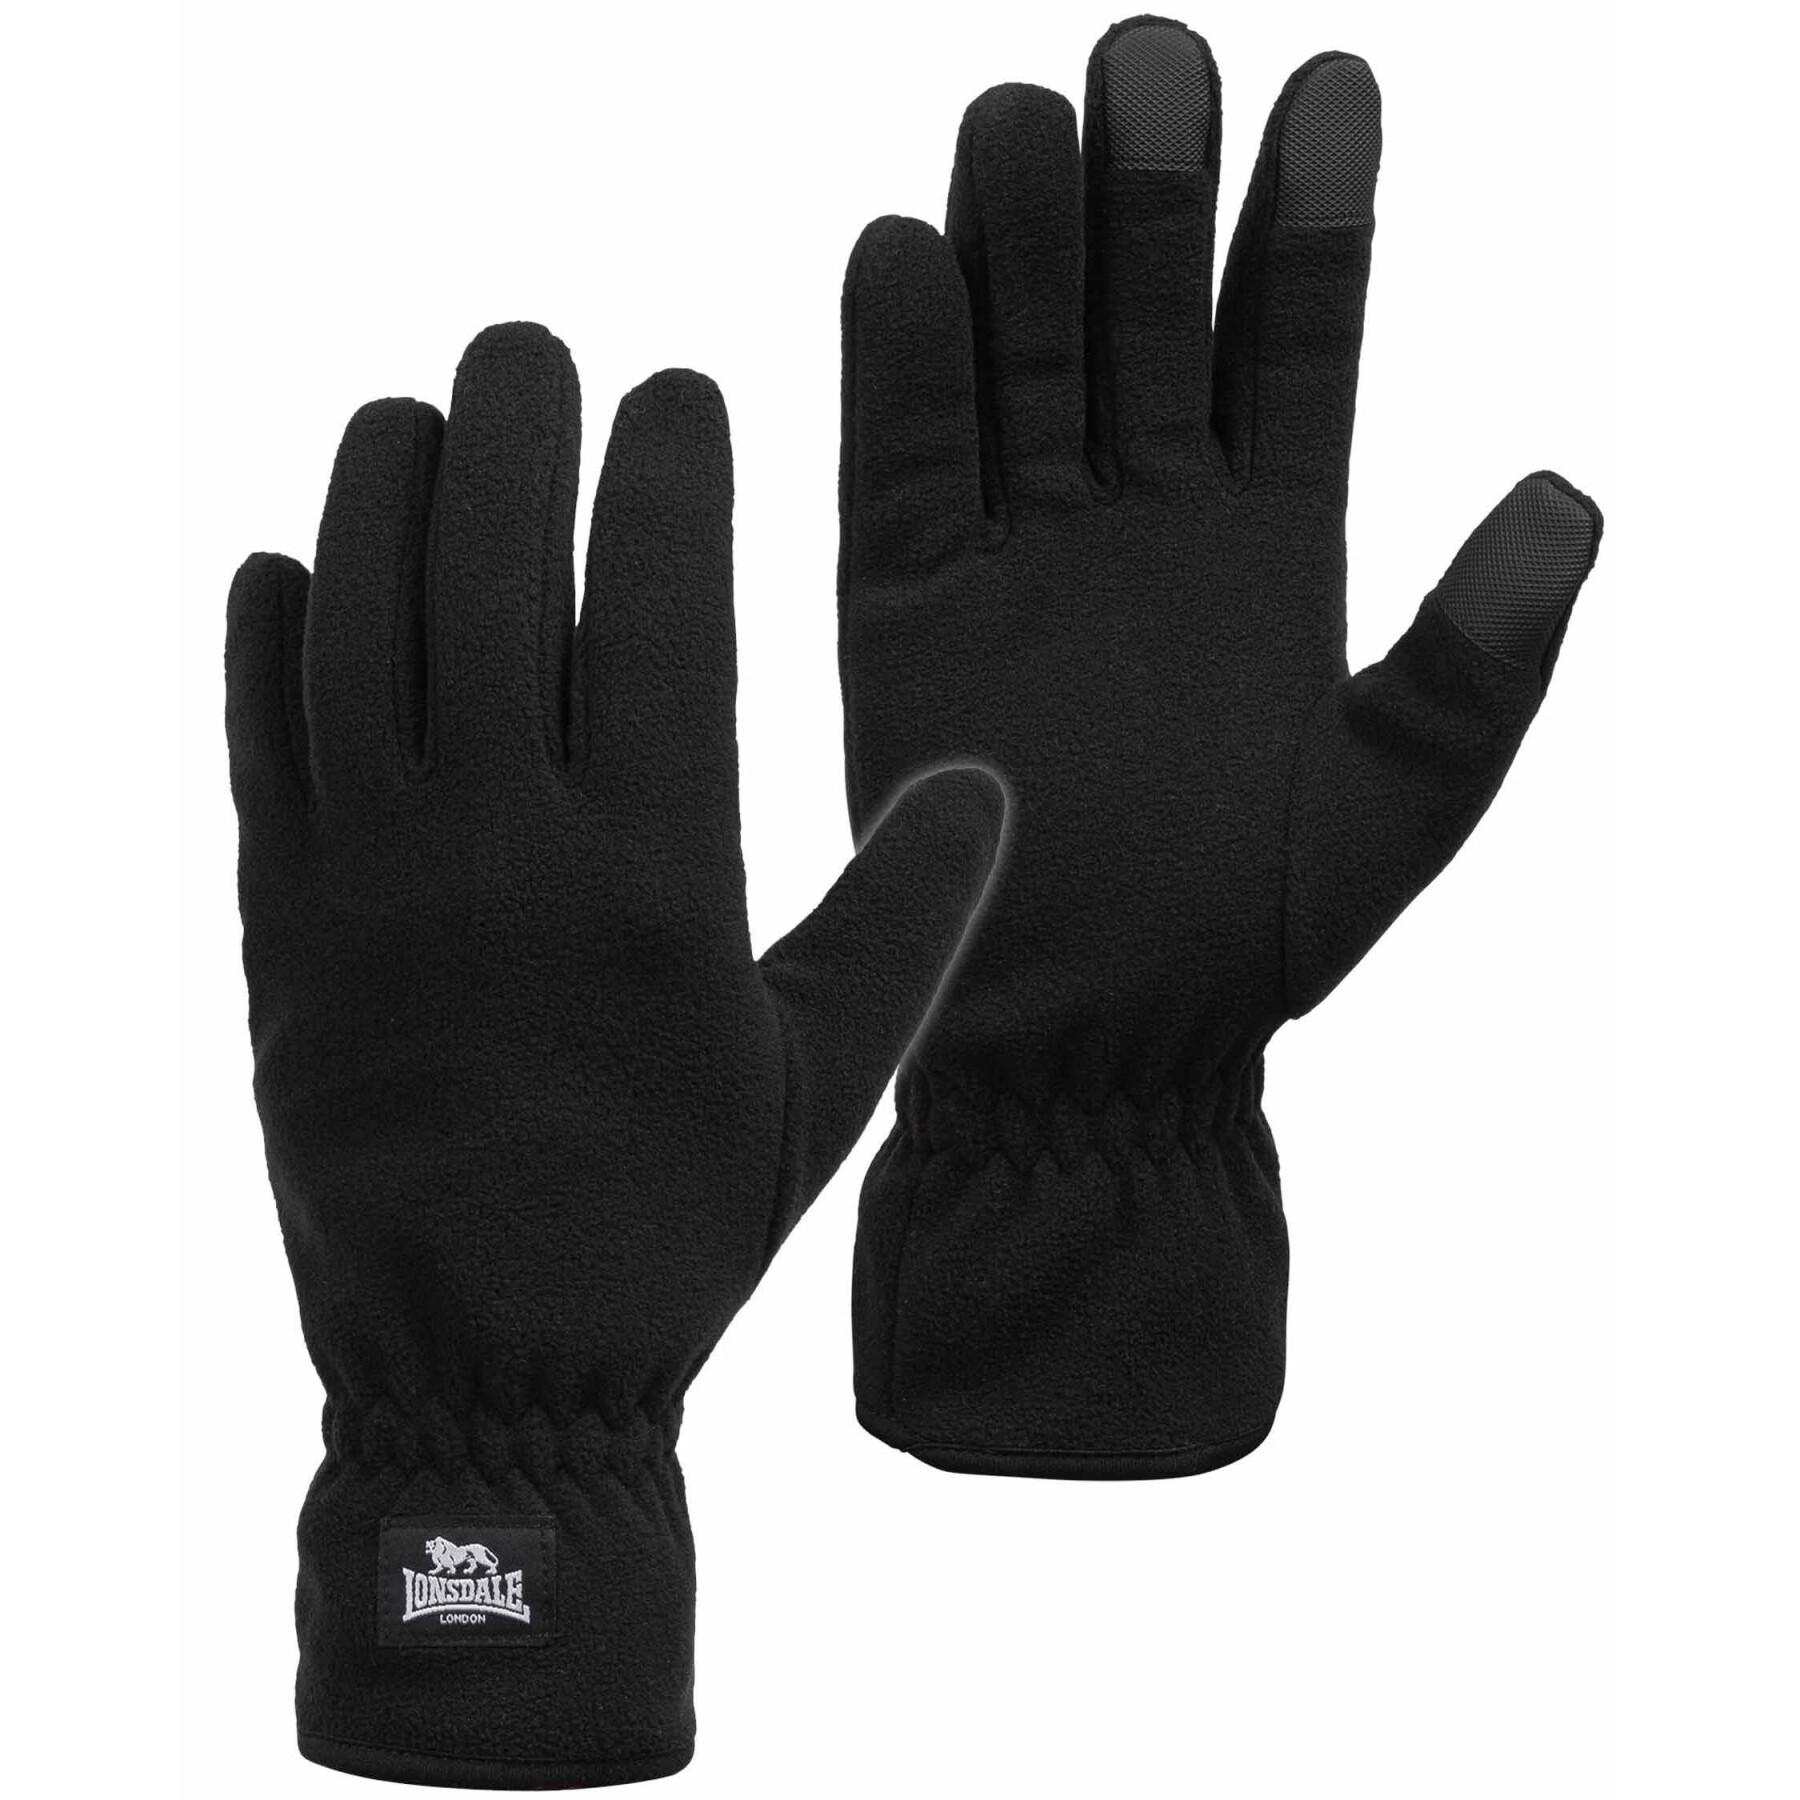 Handschuhe Lonsdale - Schals Accessoires - Handschuhe Ayside Mode-Accessoires - 